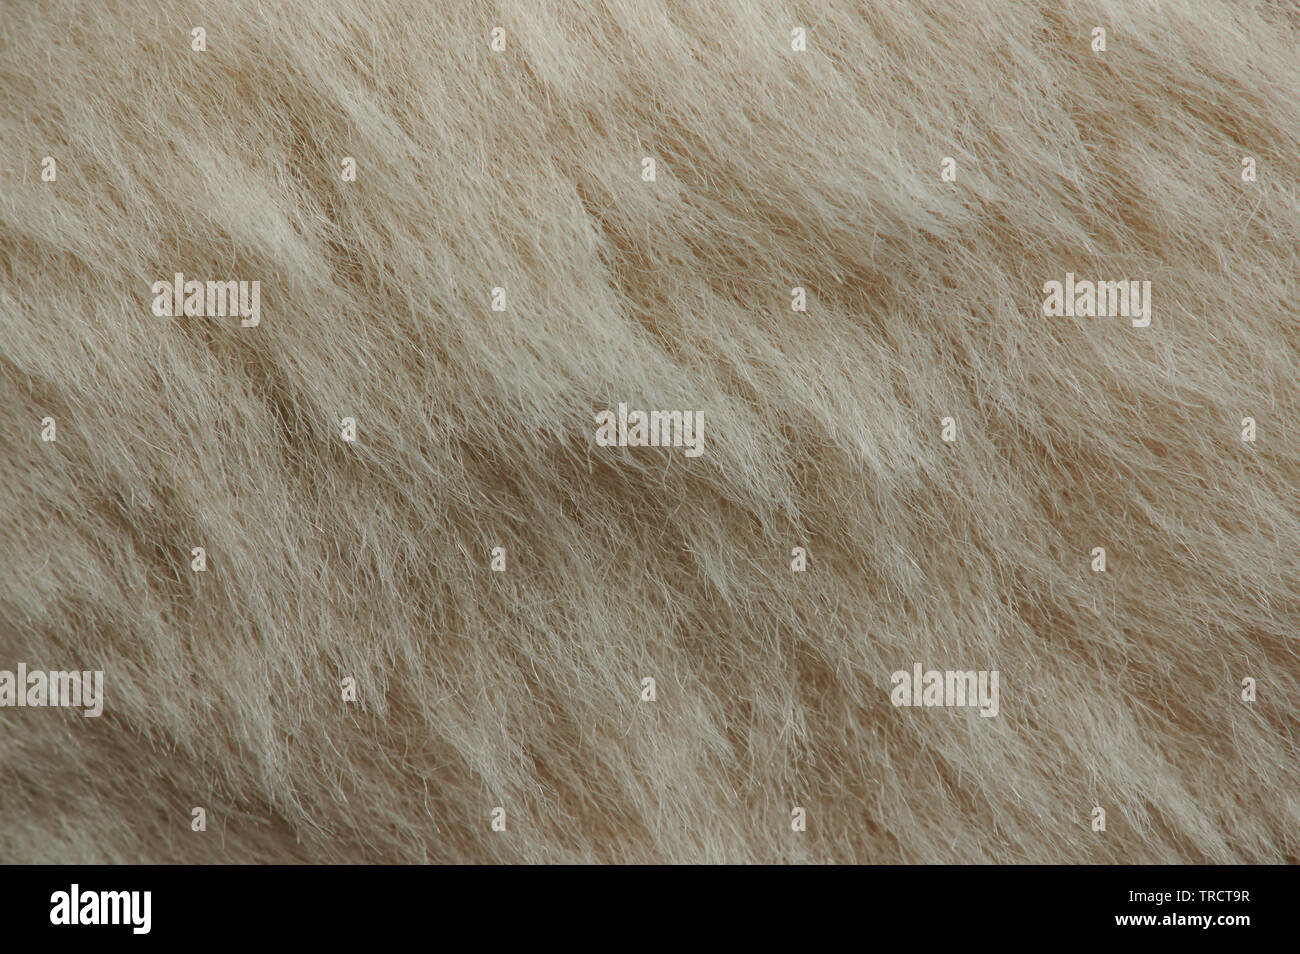 Light brown dog fur texture close up view Stock Photo